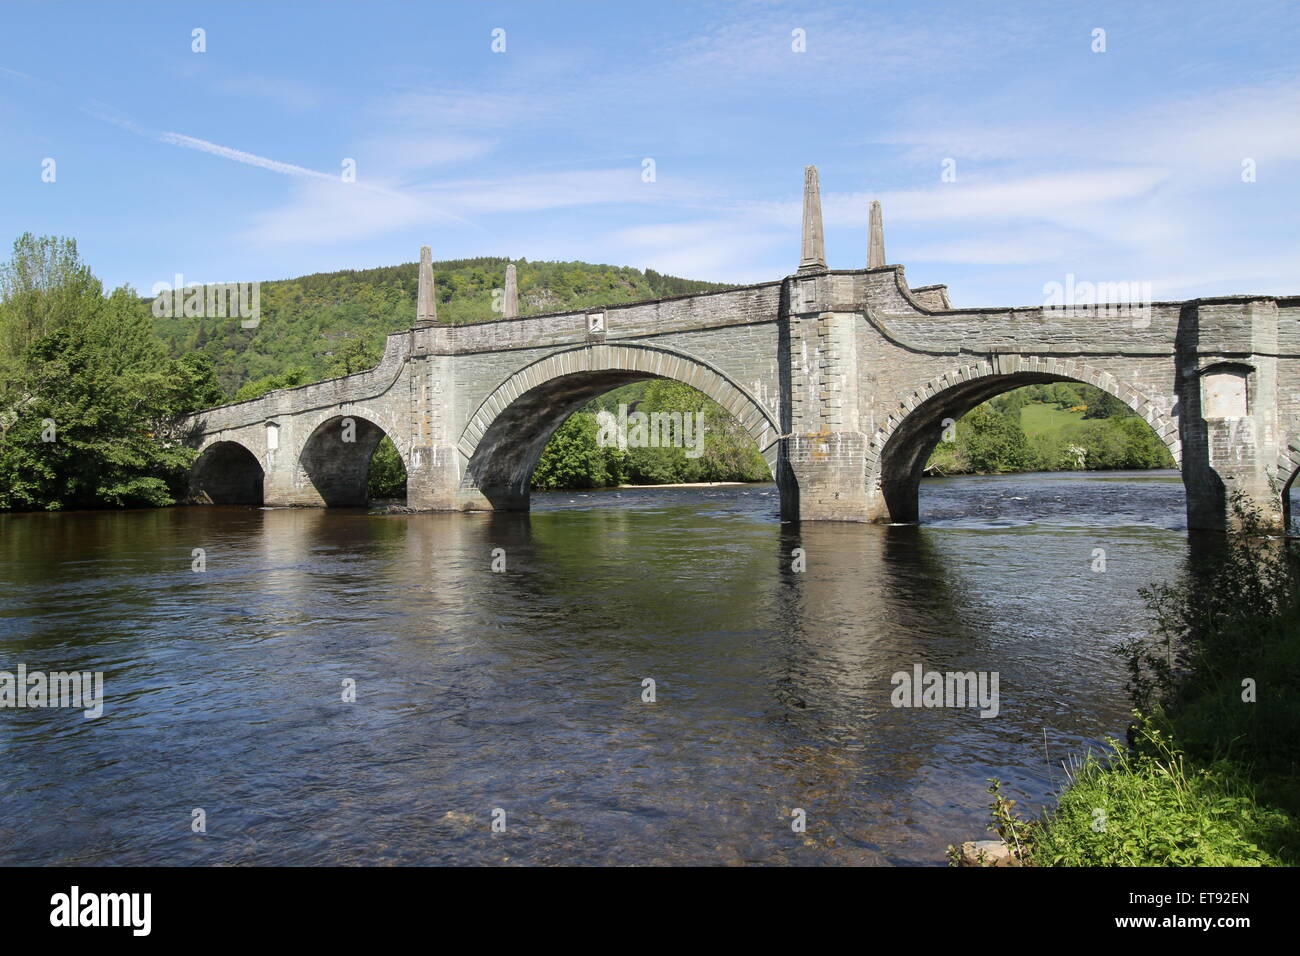 Le Général Wade's bridge sur la rivière Tay en Écosse aberfeldy juin 2015 Banque D'Images